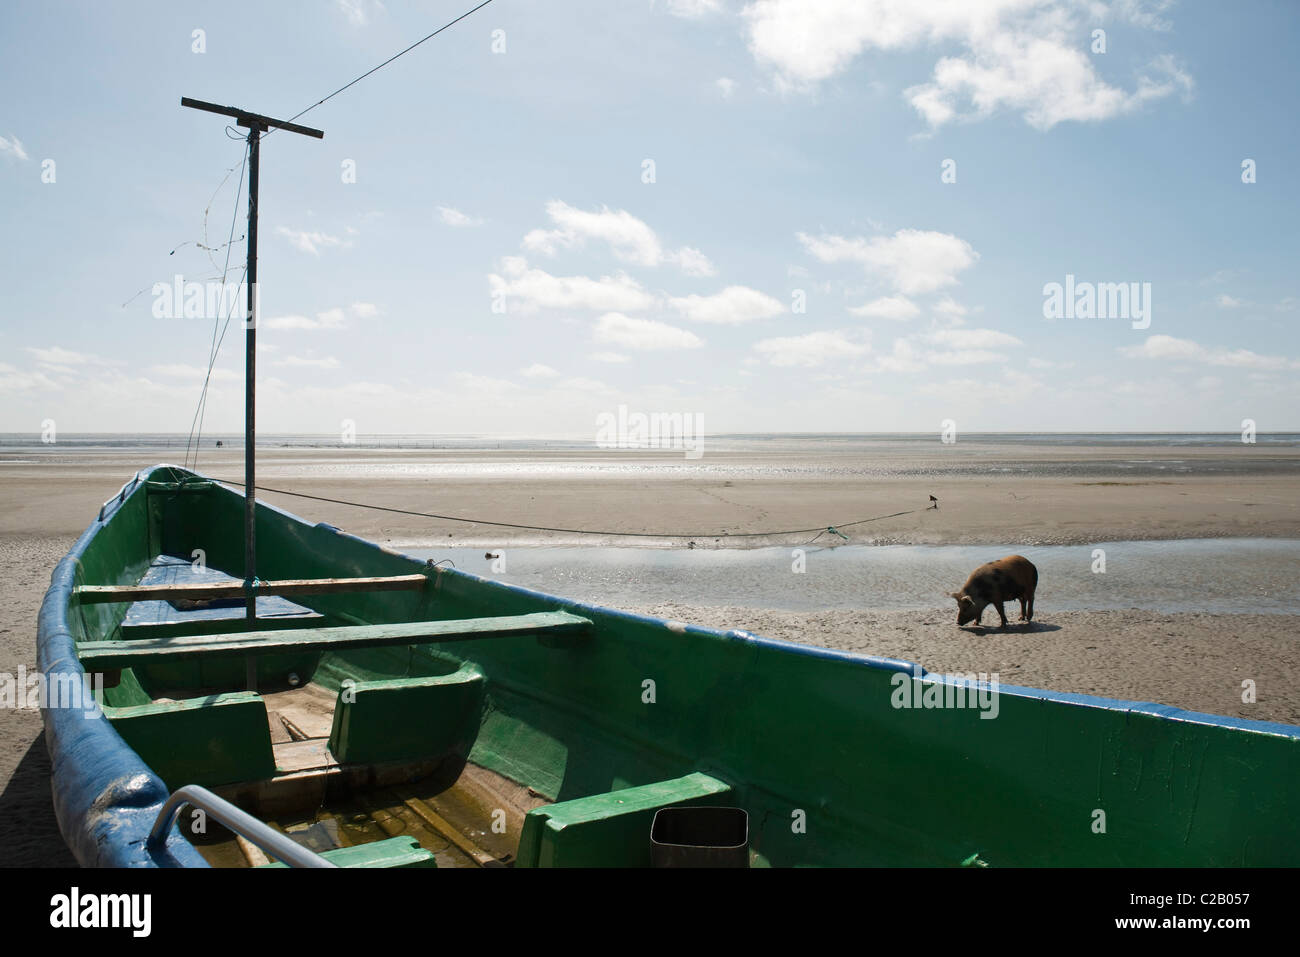 Sud America, Amazon, a filamento in barca sulla spiaggia, maiale in background Foto Stock